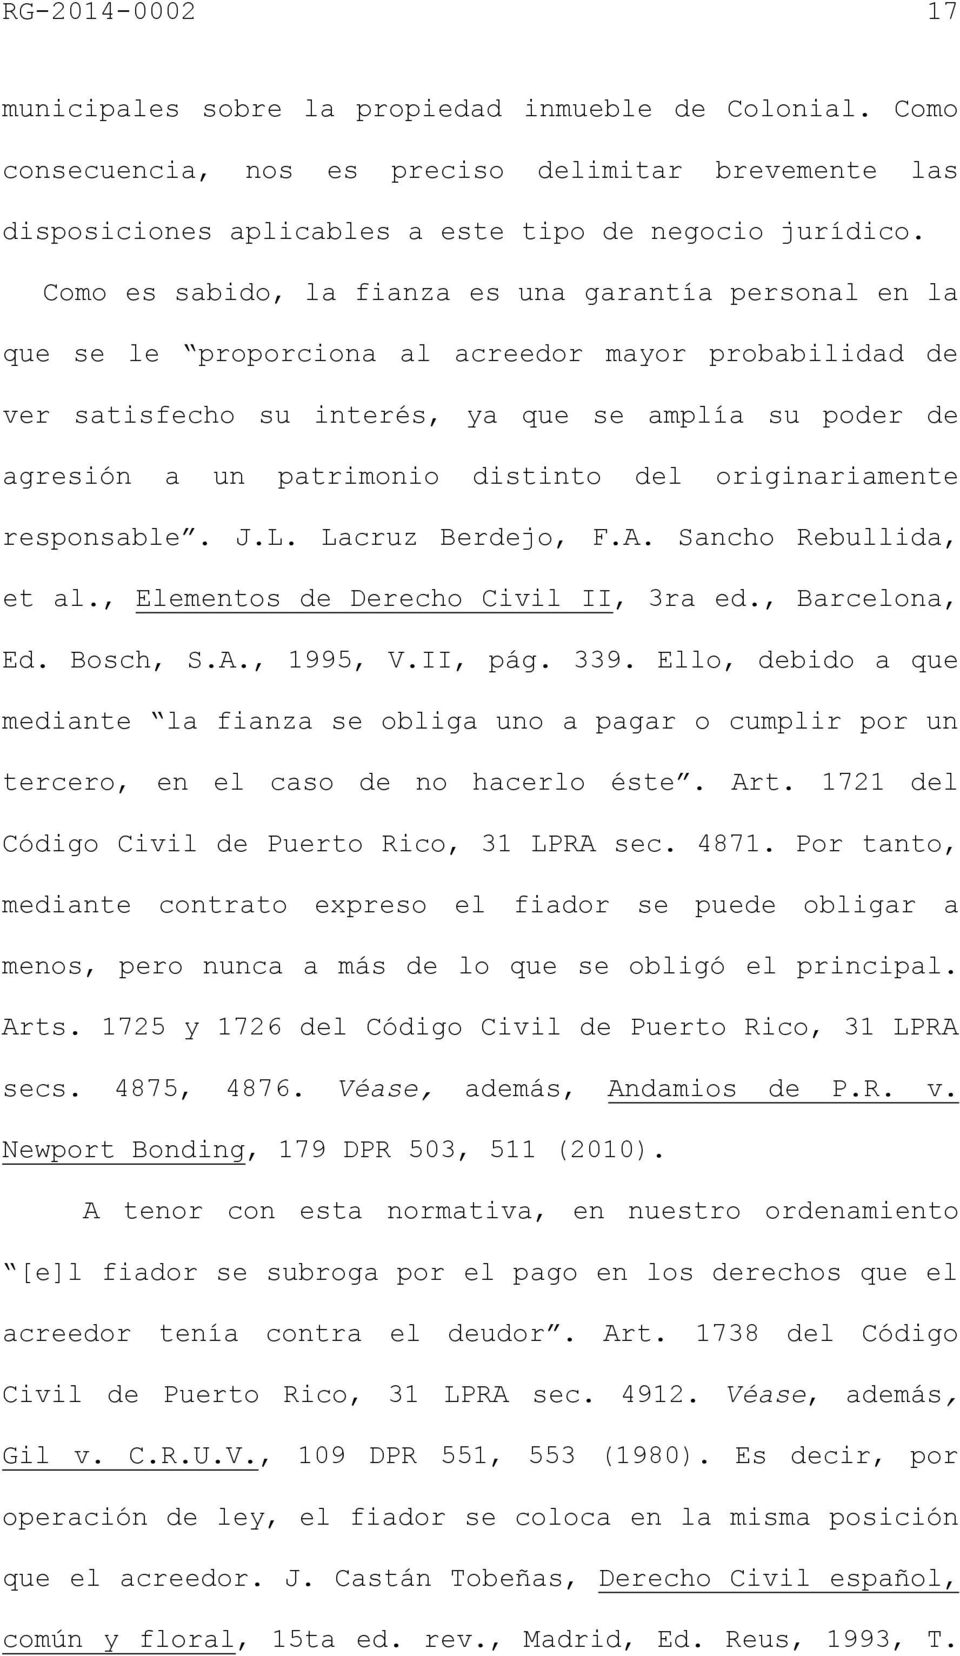 distinto del originariamente responsable. J.L. Lacruz Berdejo, F.A. Sancho Rebullida, et al., Elementos de Derecho Civil II, 3ra ed., Barcelona, Ed. Bosch, S.A., 1995, V.II, pág. 339.